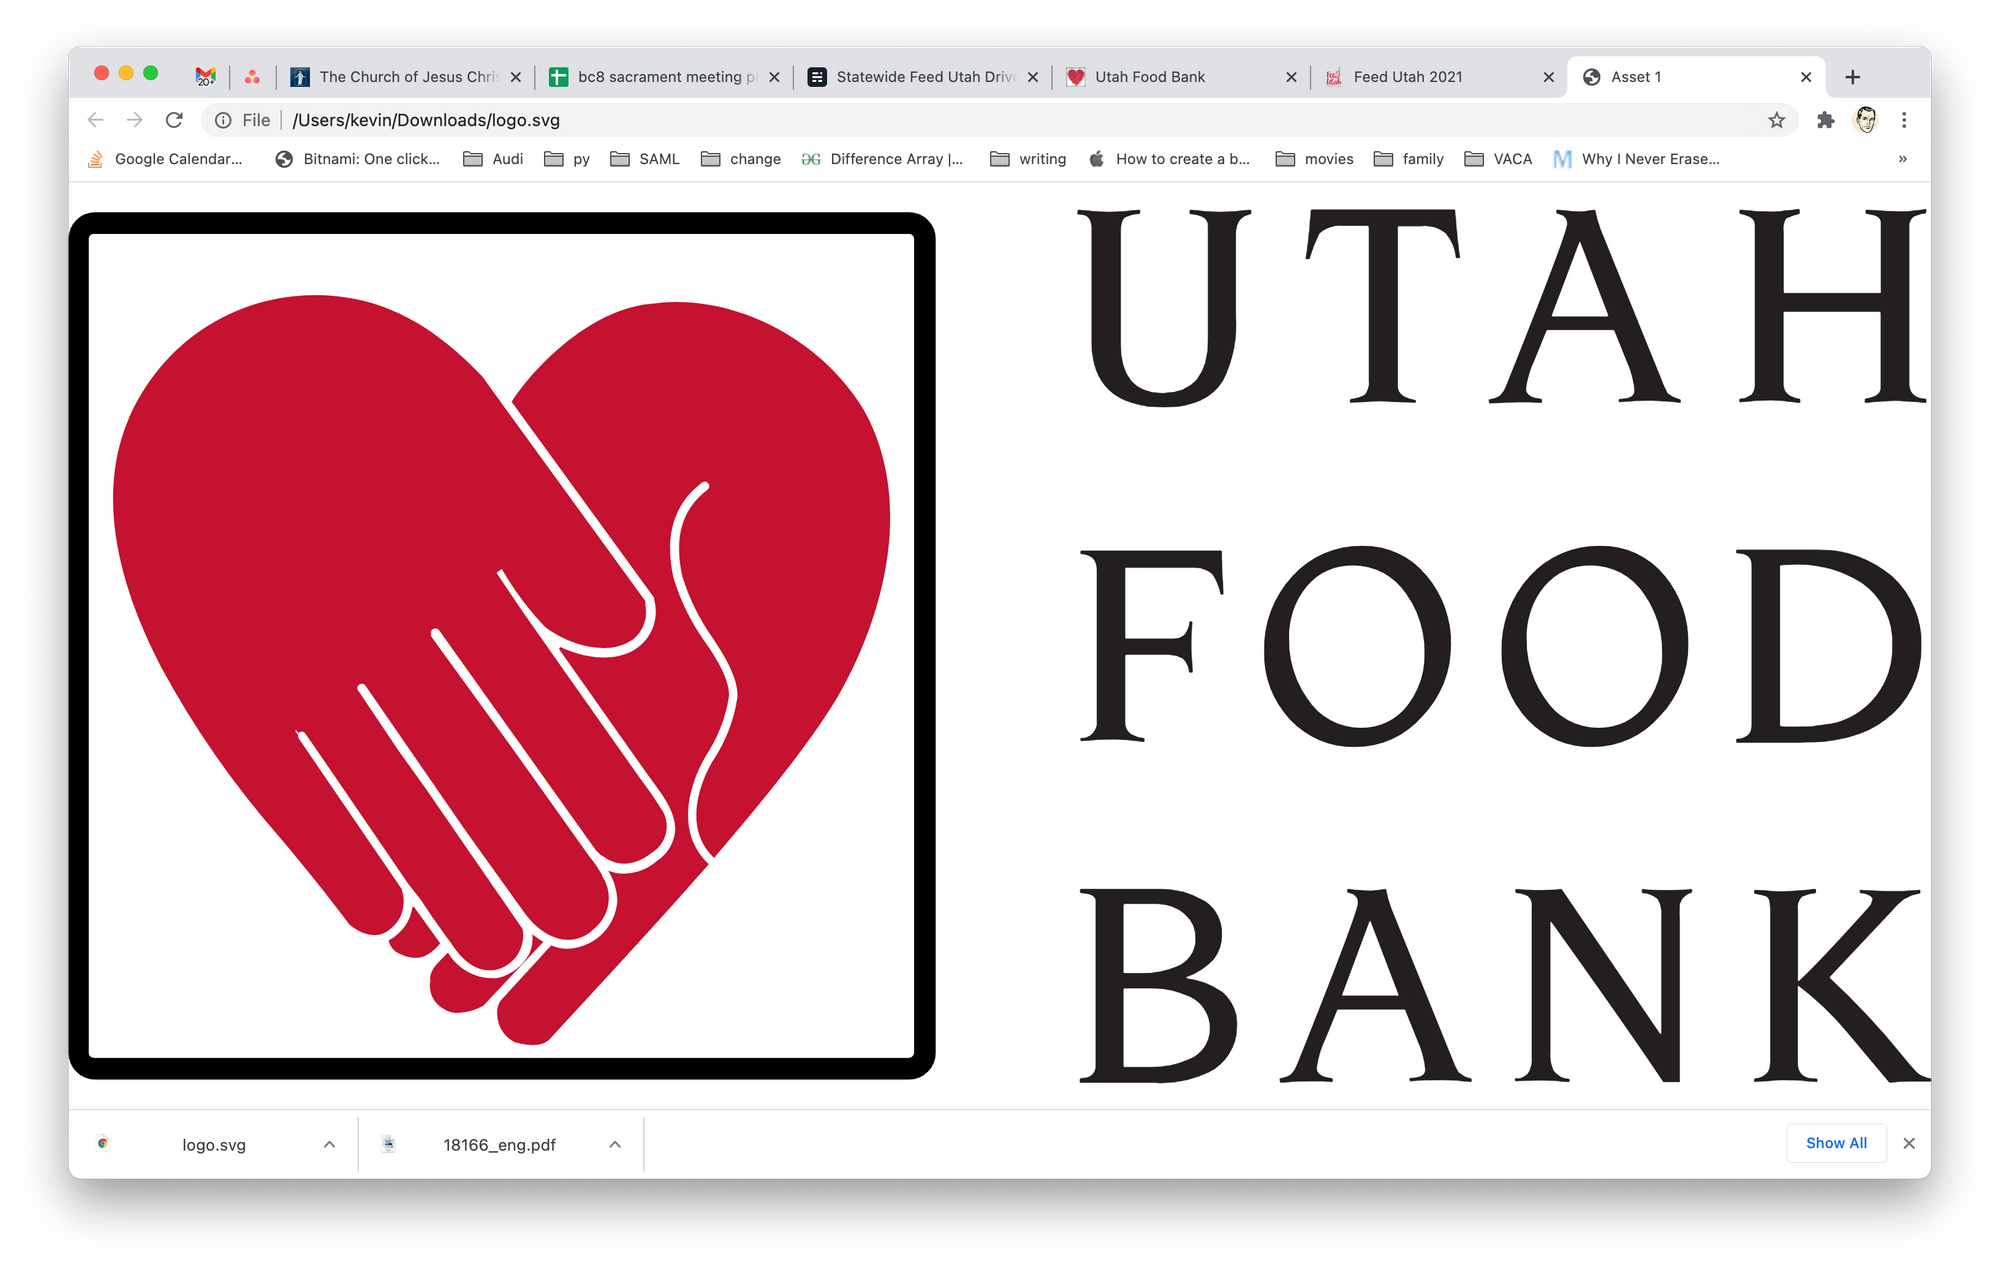 Statewide Feed Utah Drive - 2021